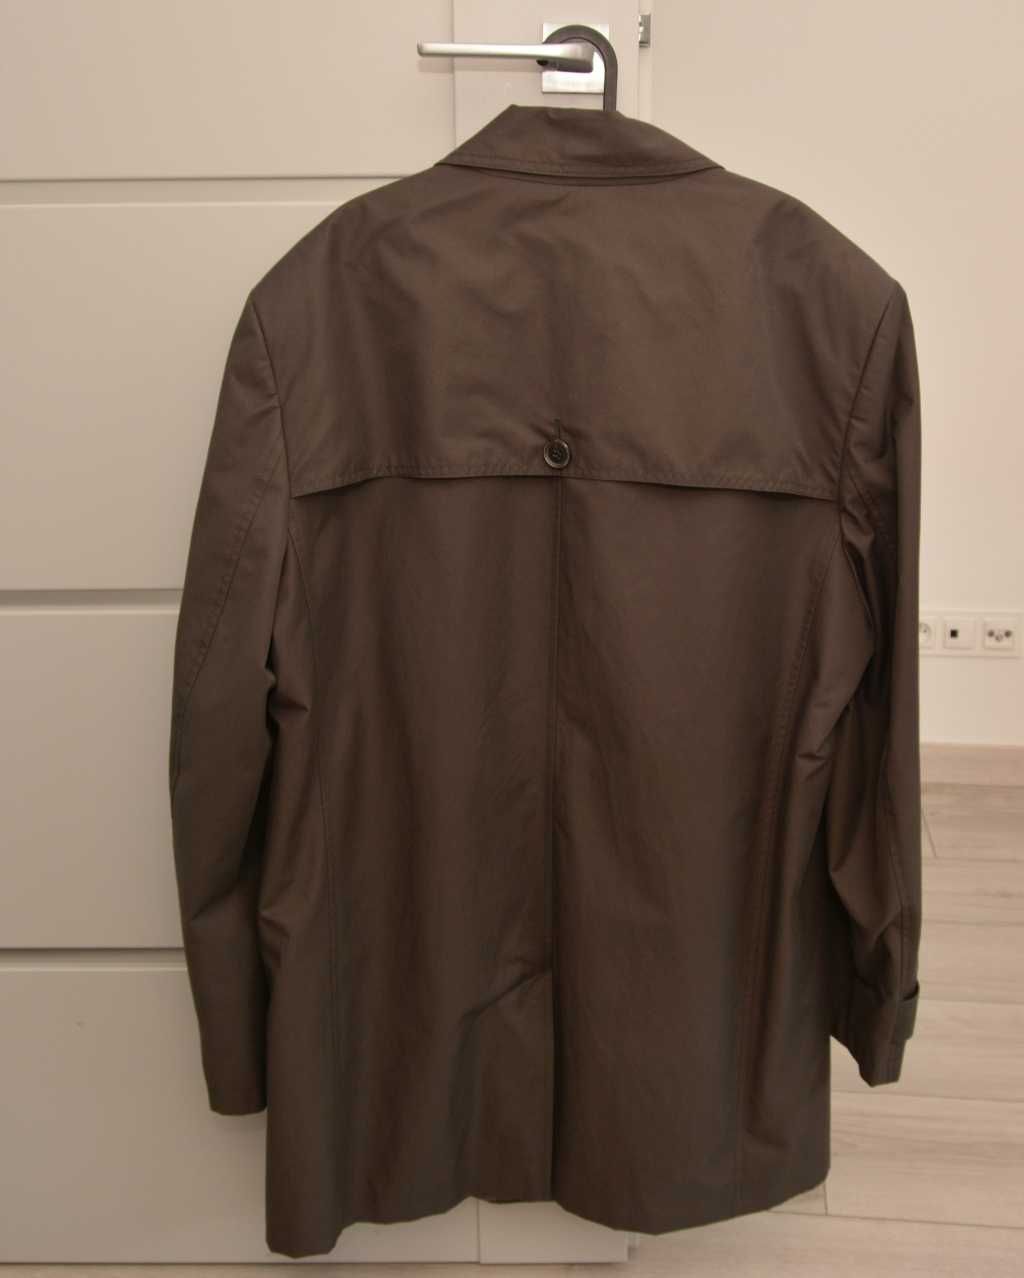 Bytom krótki płaszcz męski rozmiar 58 brązowy jak nowy